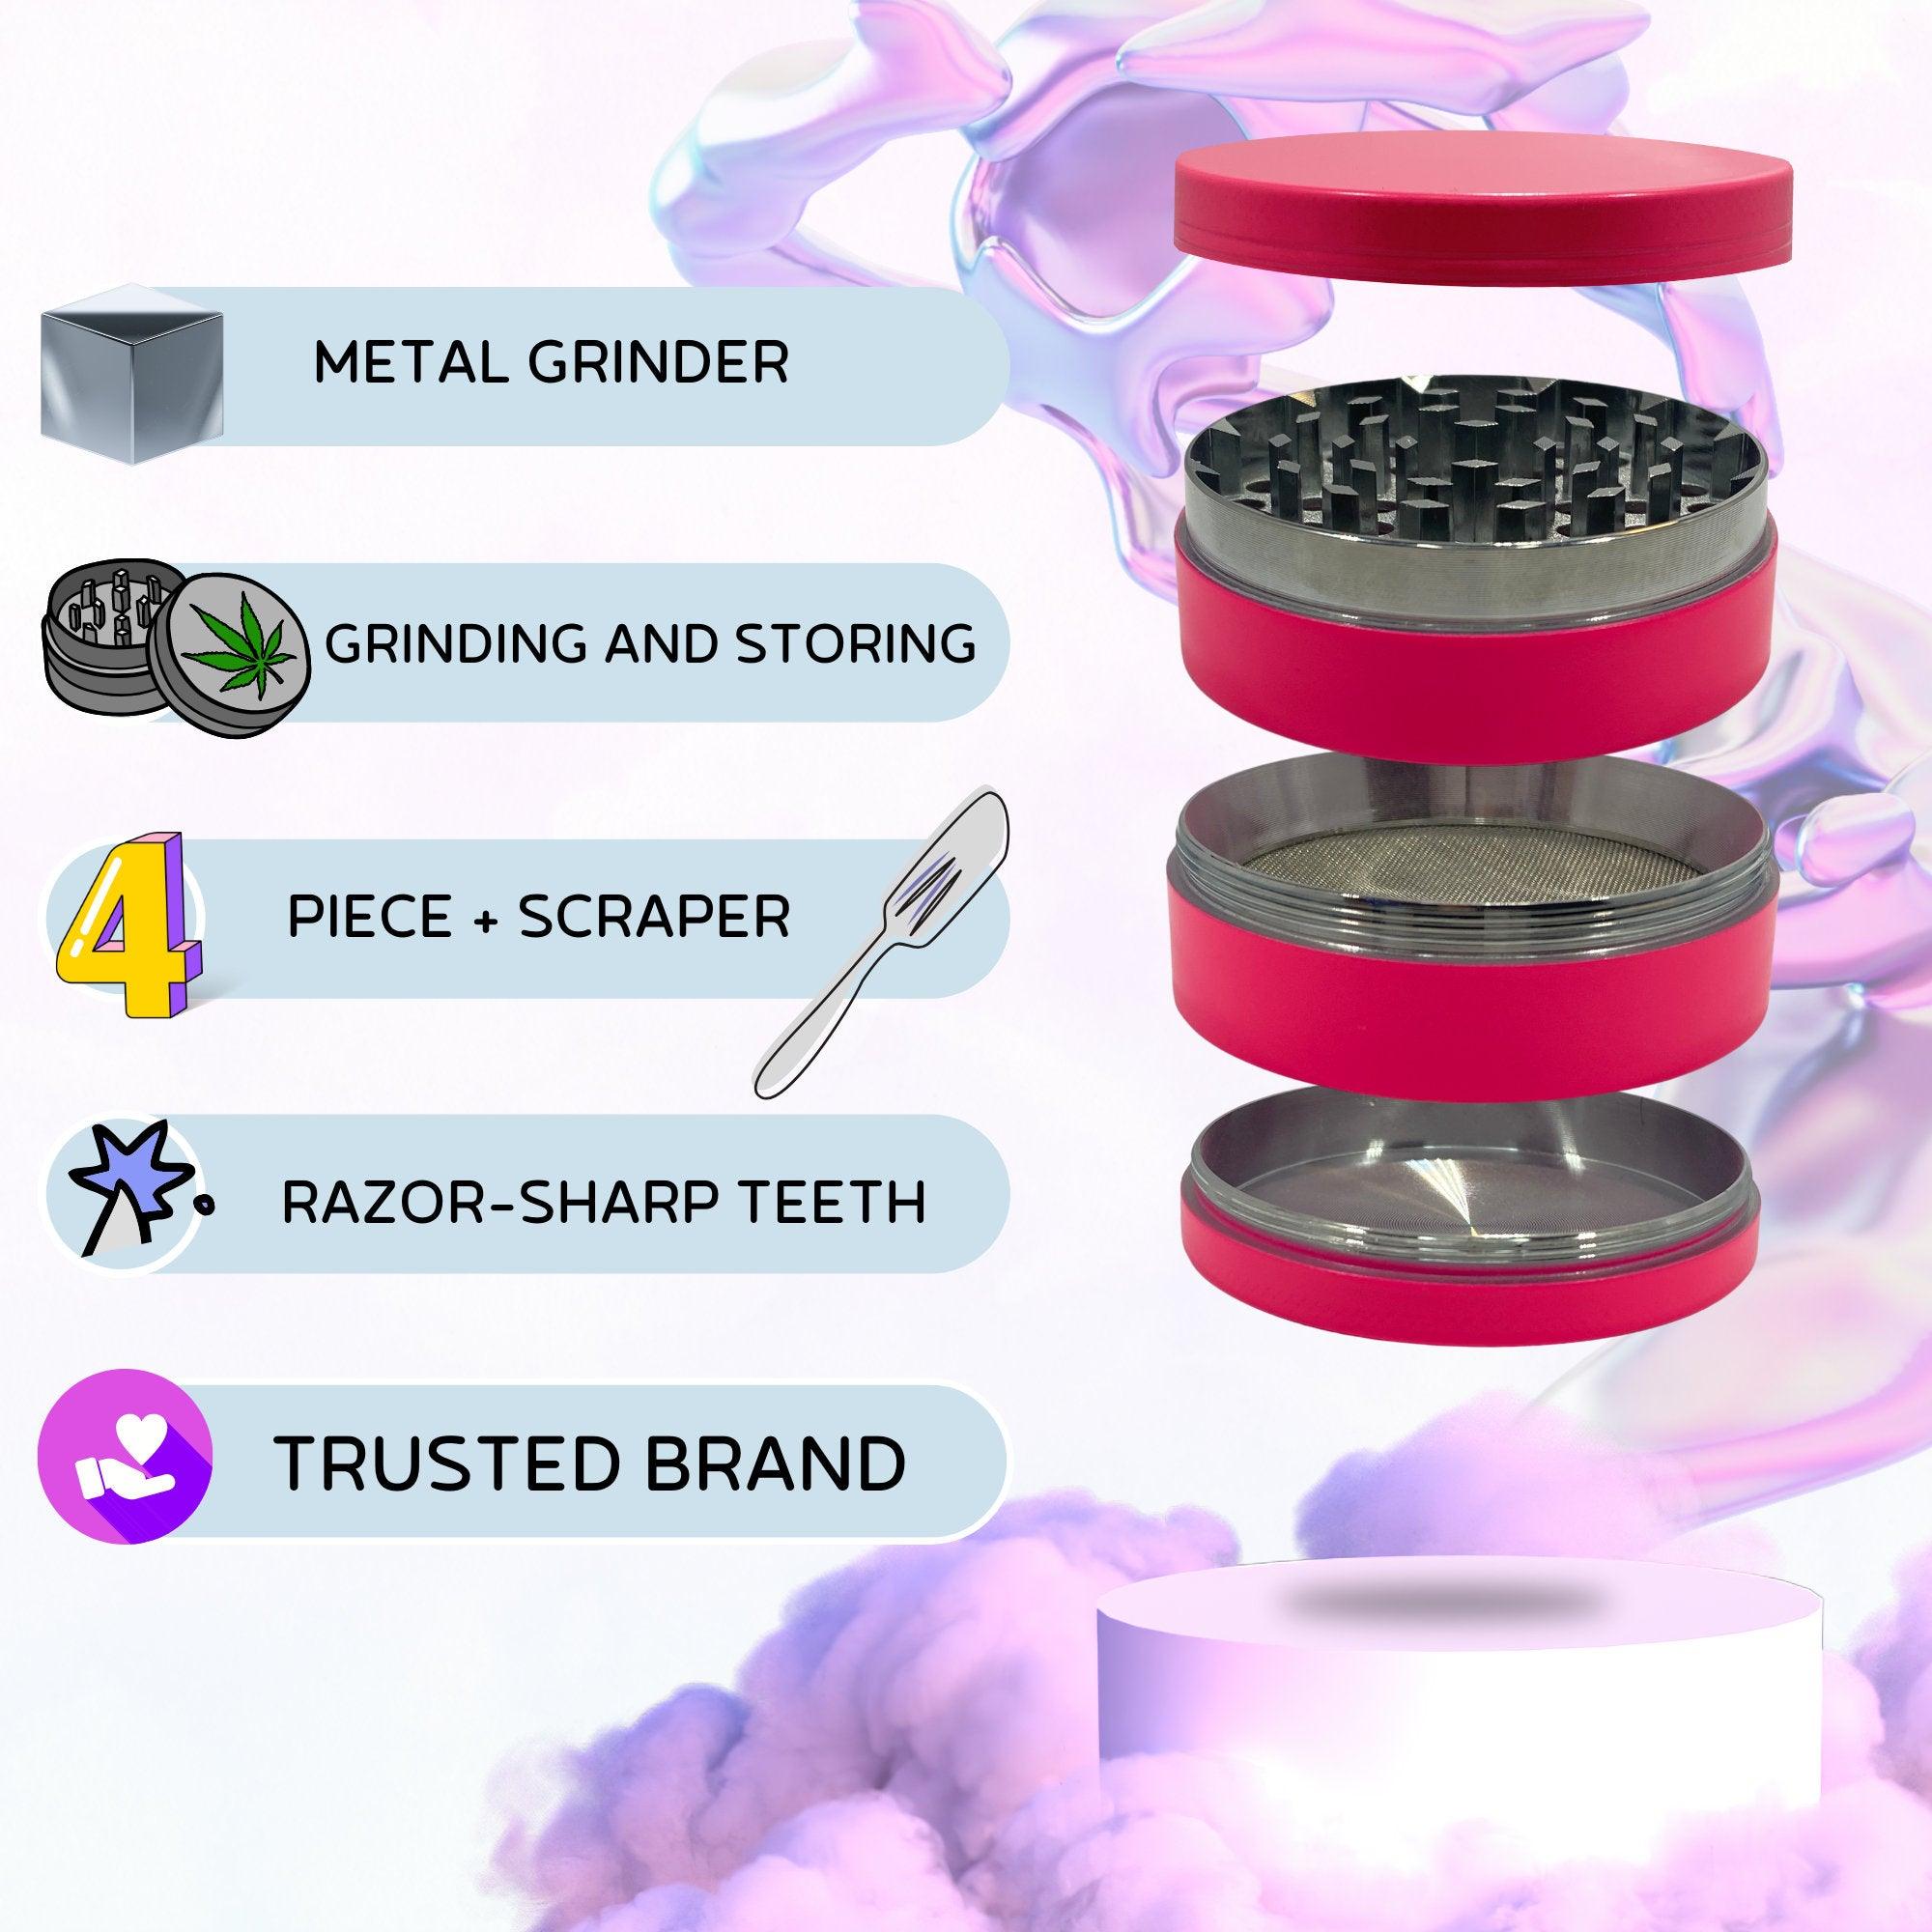 Colorful Weed Grinder | Pink grinder, Red cannabis grinder, Cool weed accessories, Big Herb grinder, Best grinder, 4 pieces grinders, girly